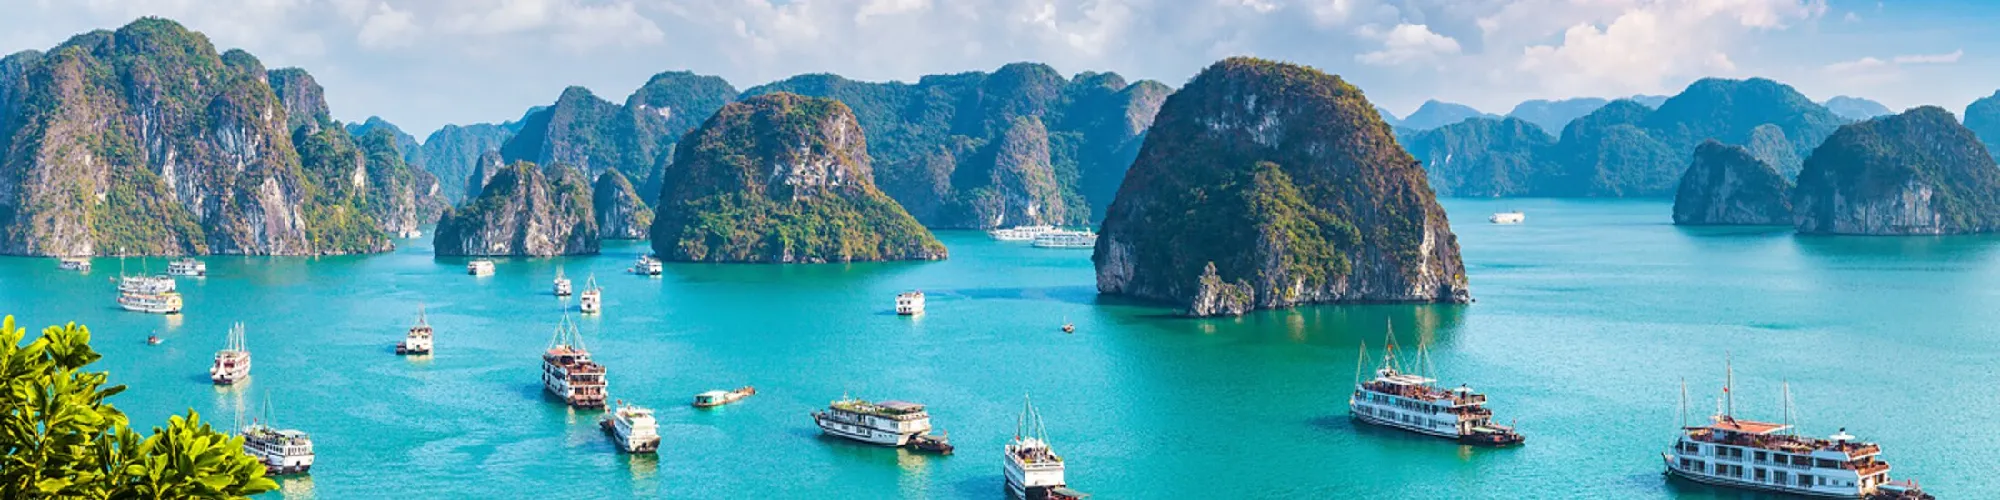 Traumreise nach Vietnam background image